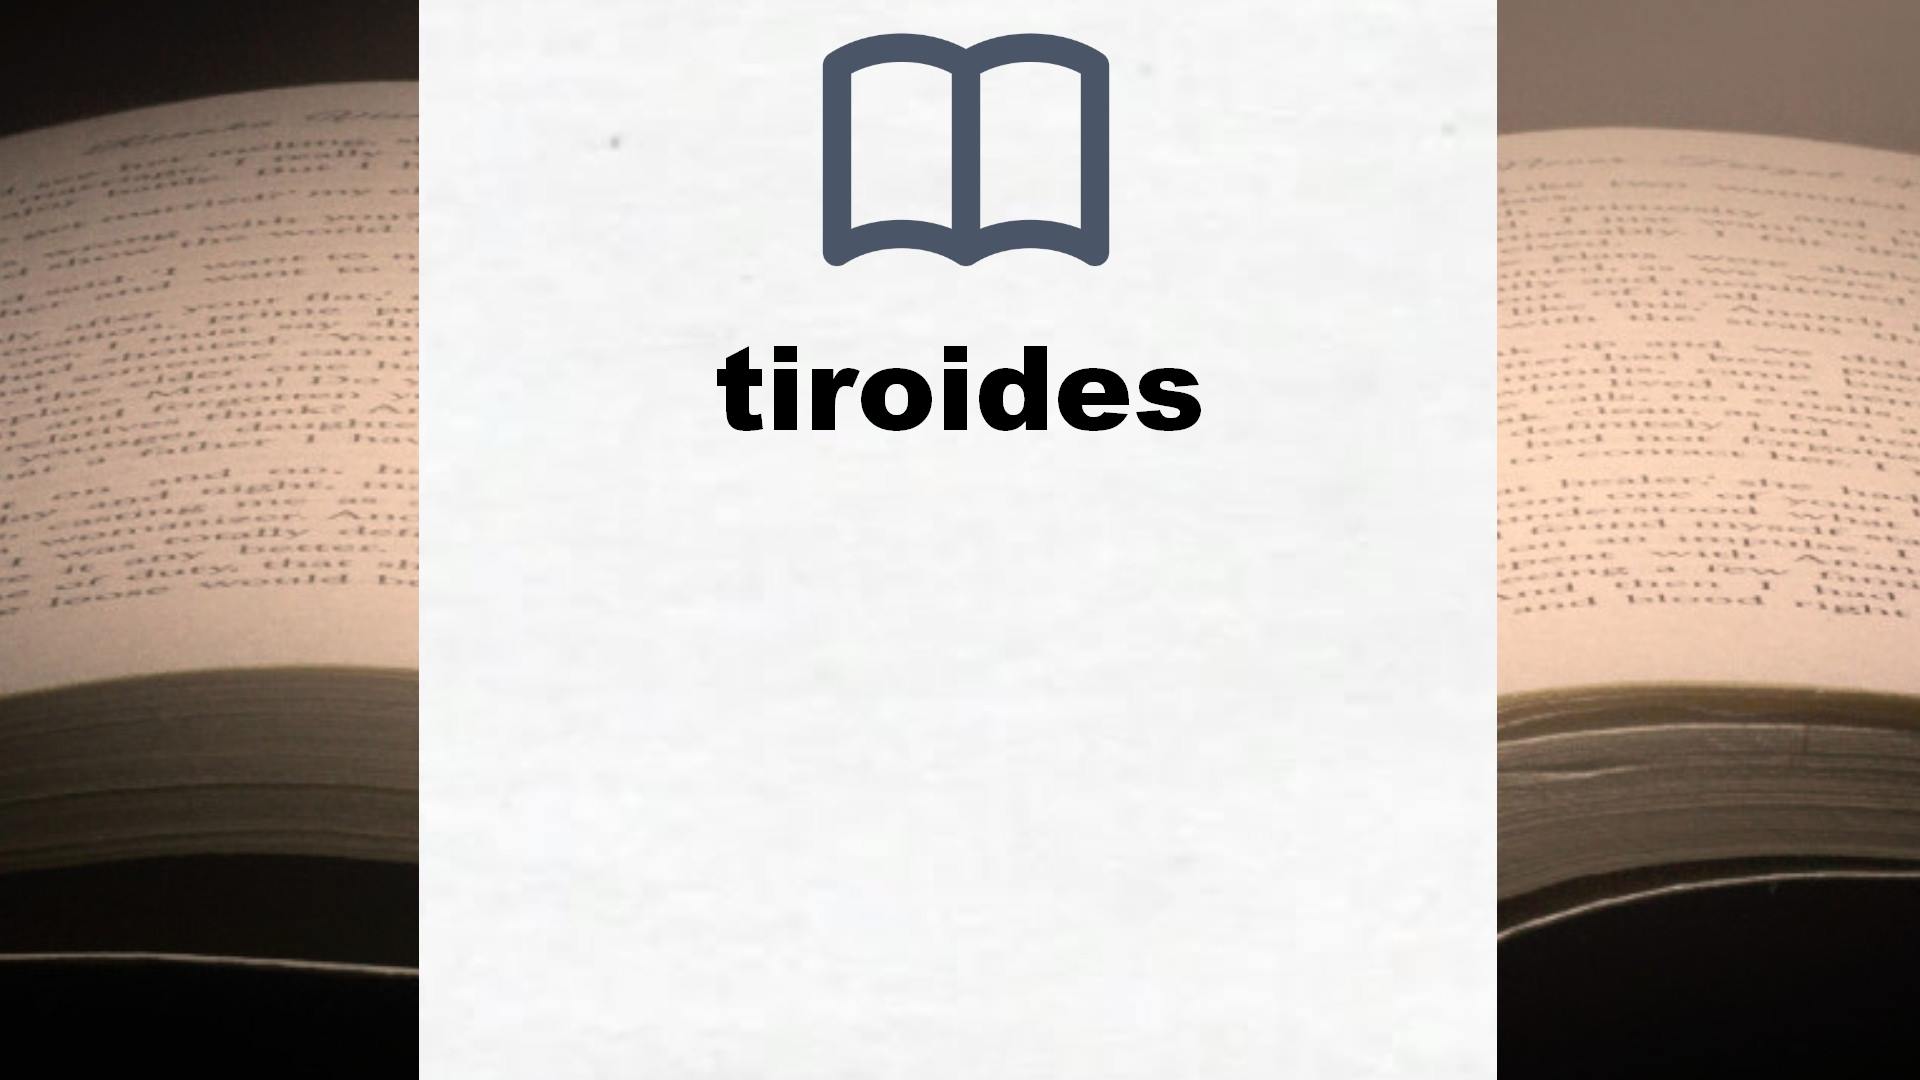 Libros sobre tiroides